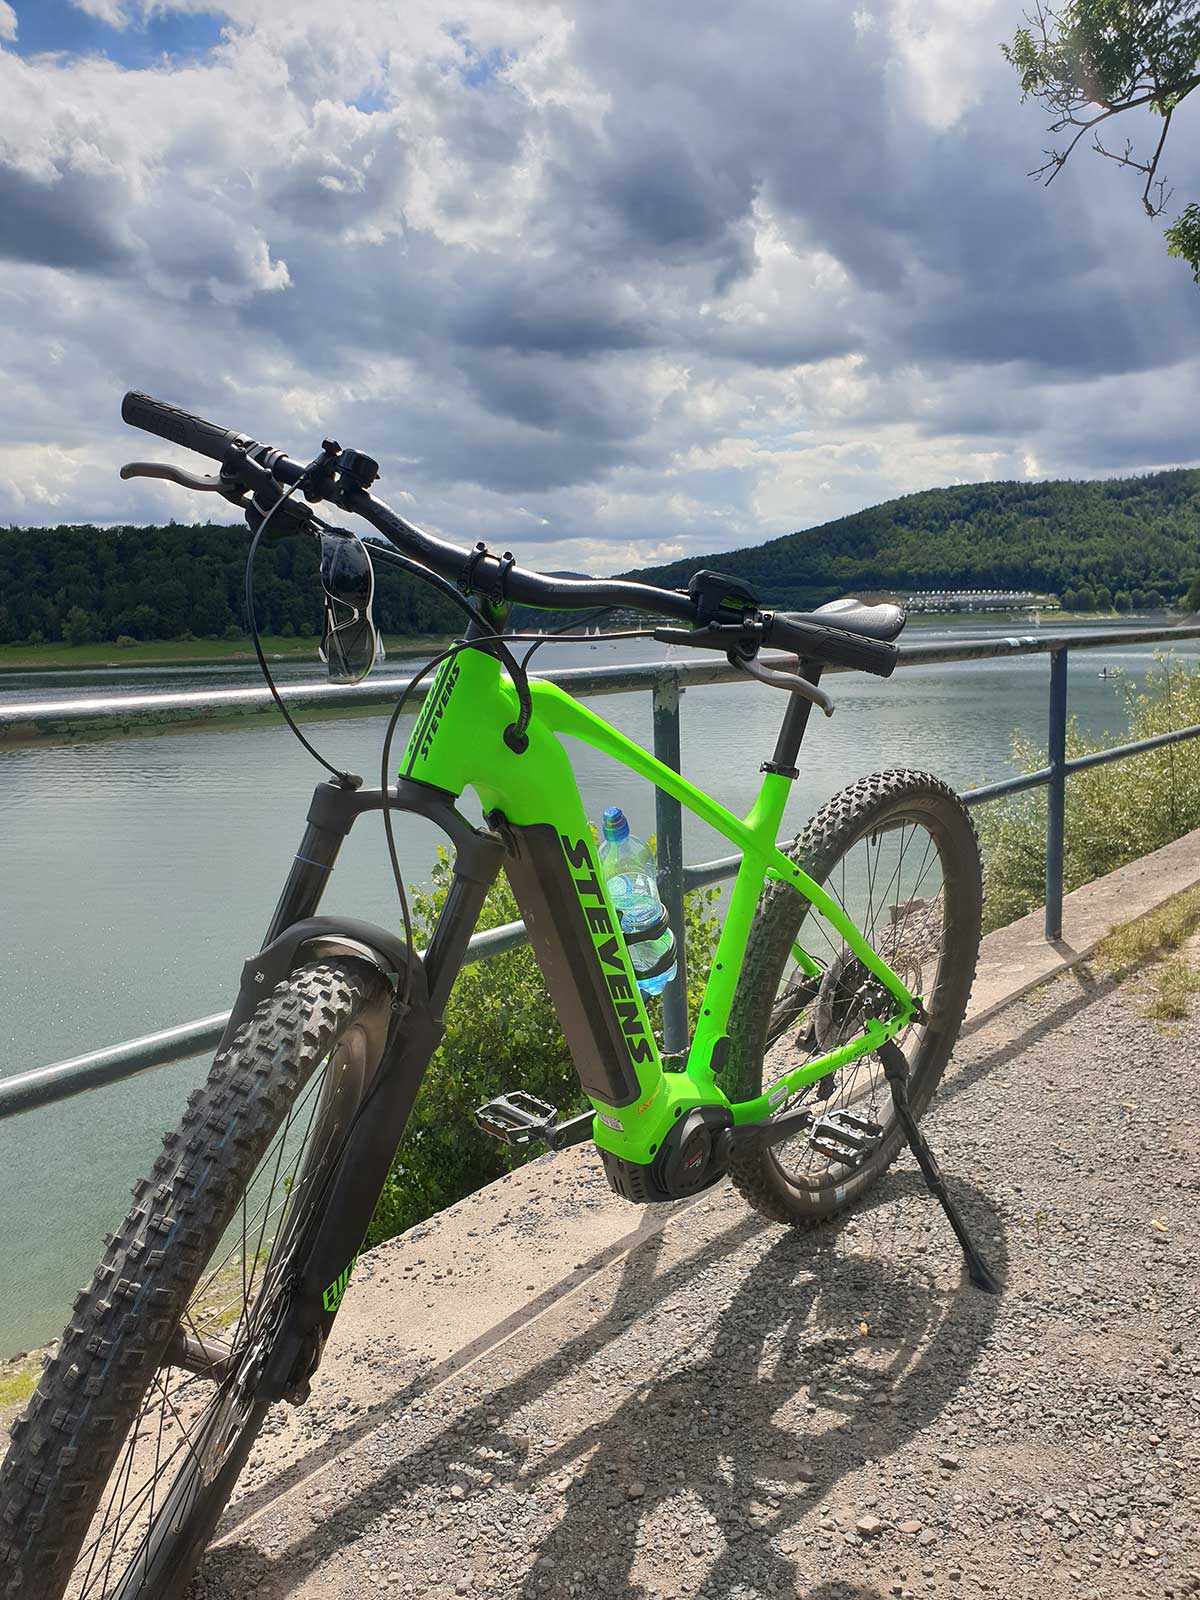 JobRad Moment von Aexander mit hellgrünem E-Mountainbike an Geländer vor See